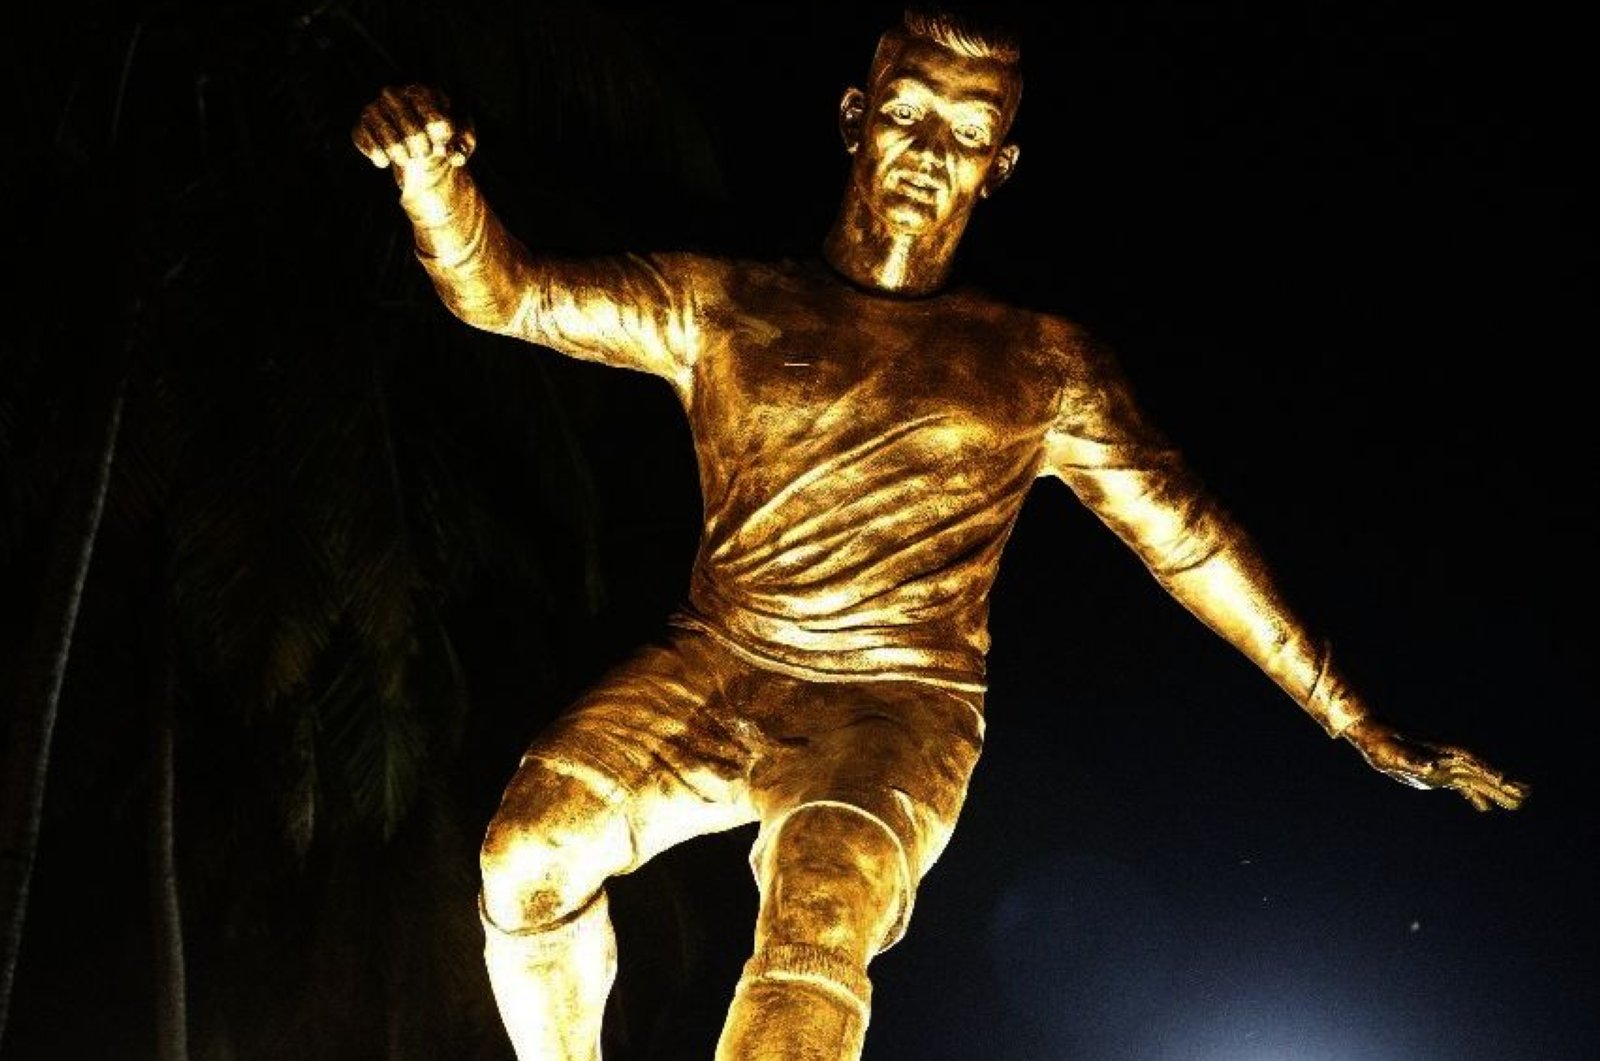 Patung Cristiano Ronaldo di Goa India Picu Kontroversi